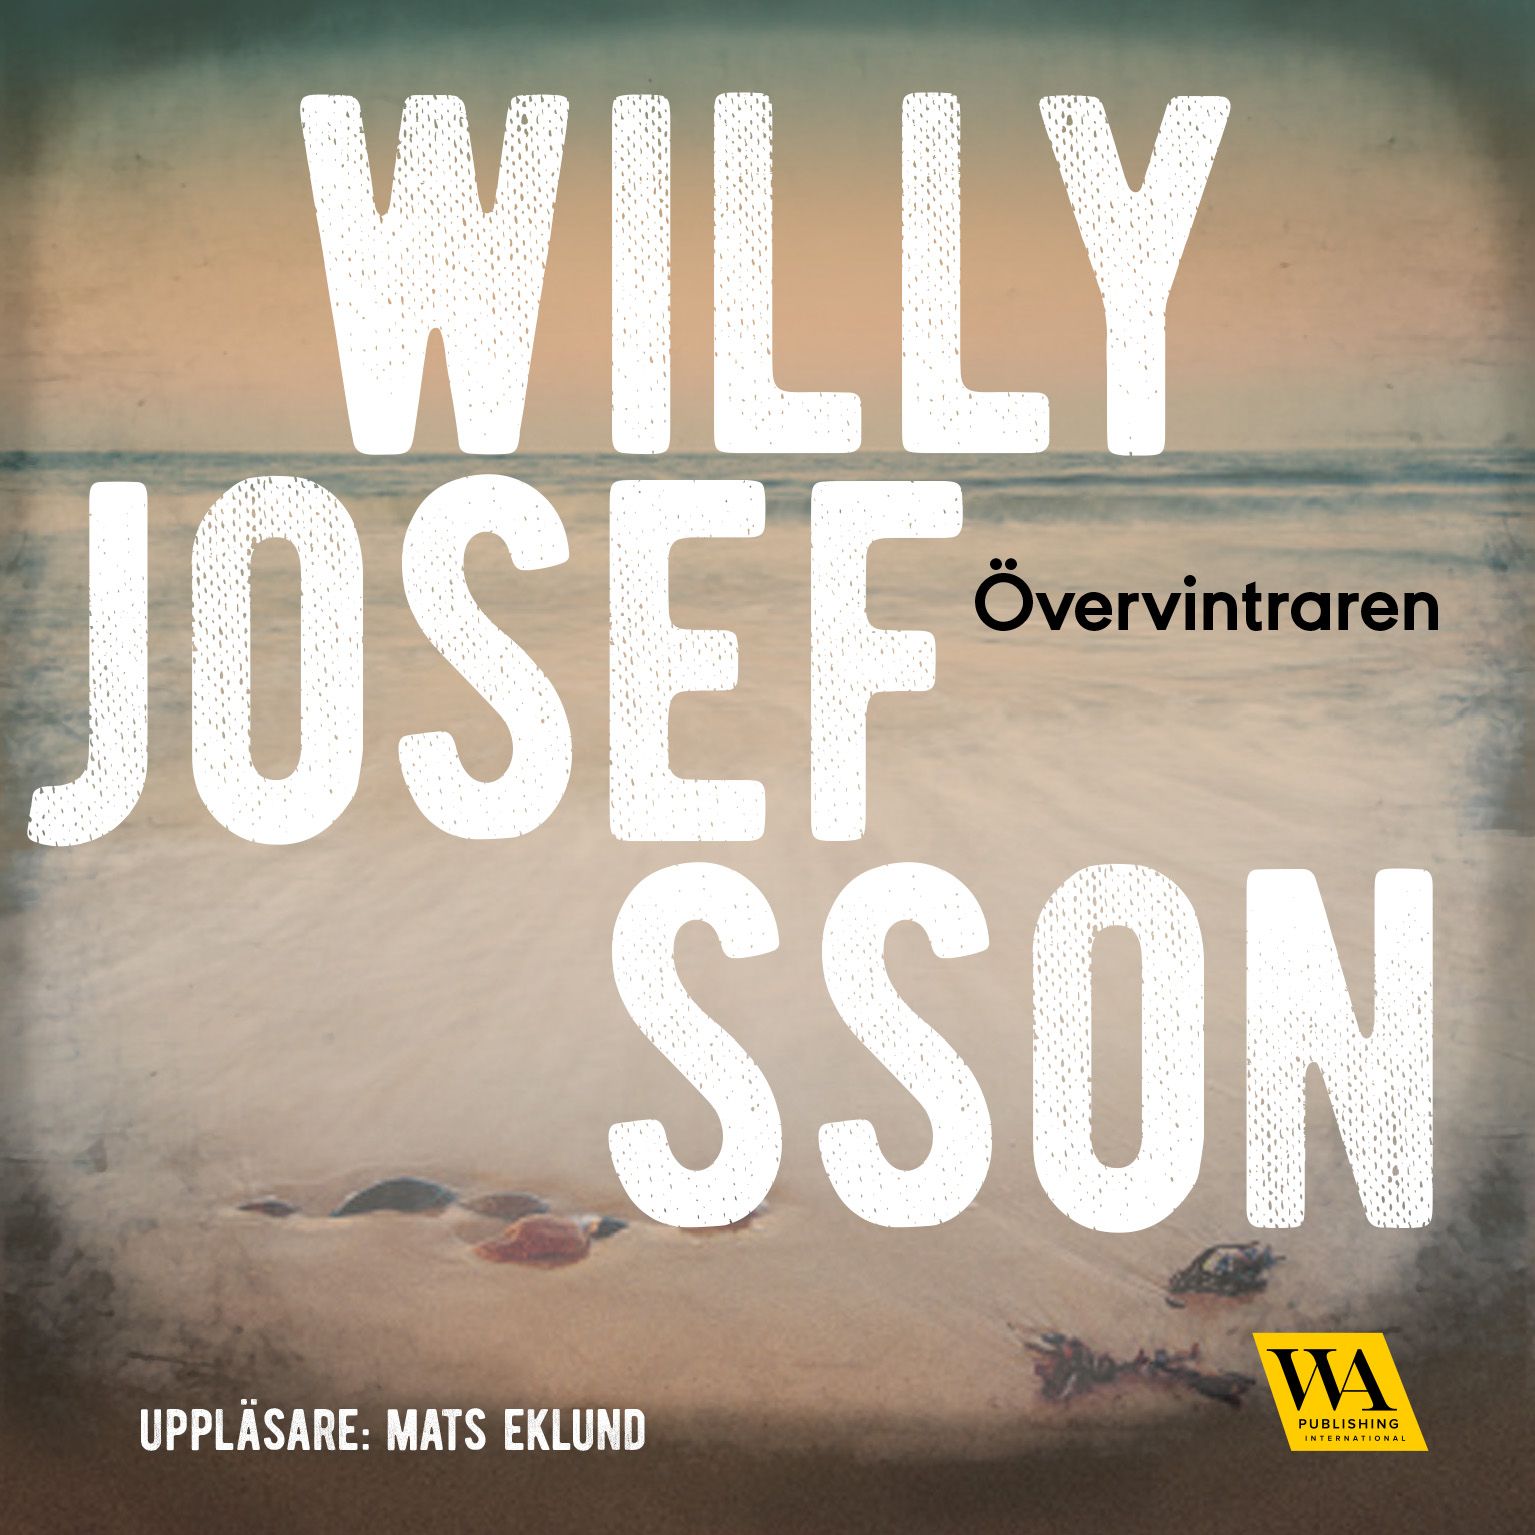 Övervintraren, audiobook by Willy Josefsson